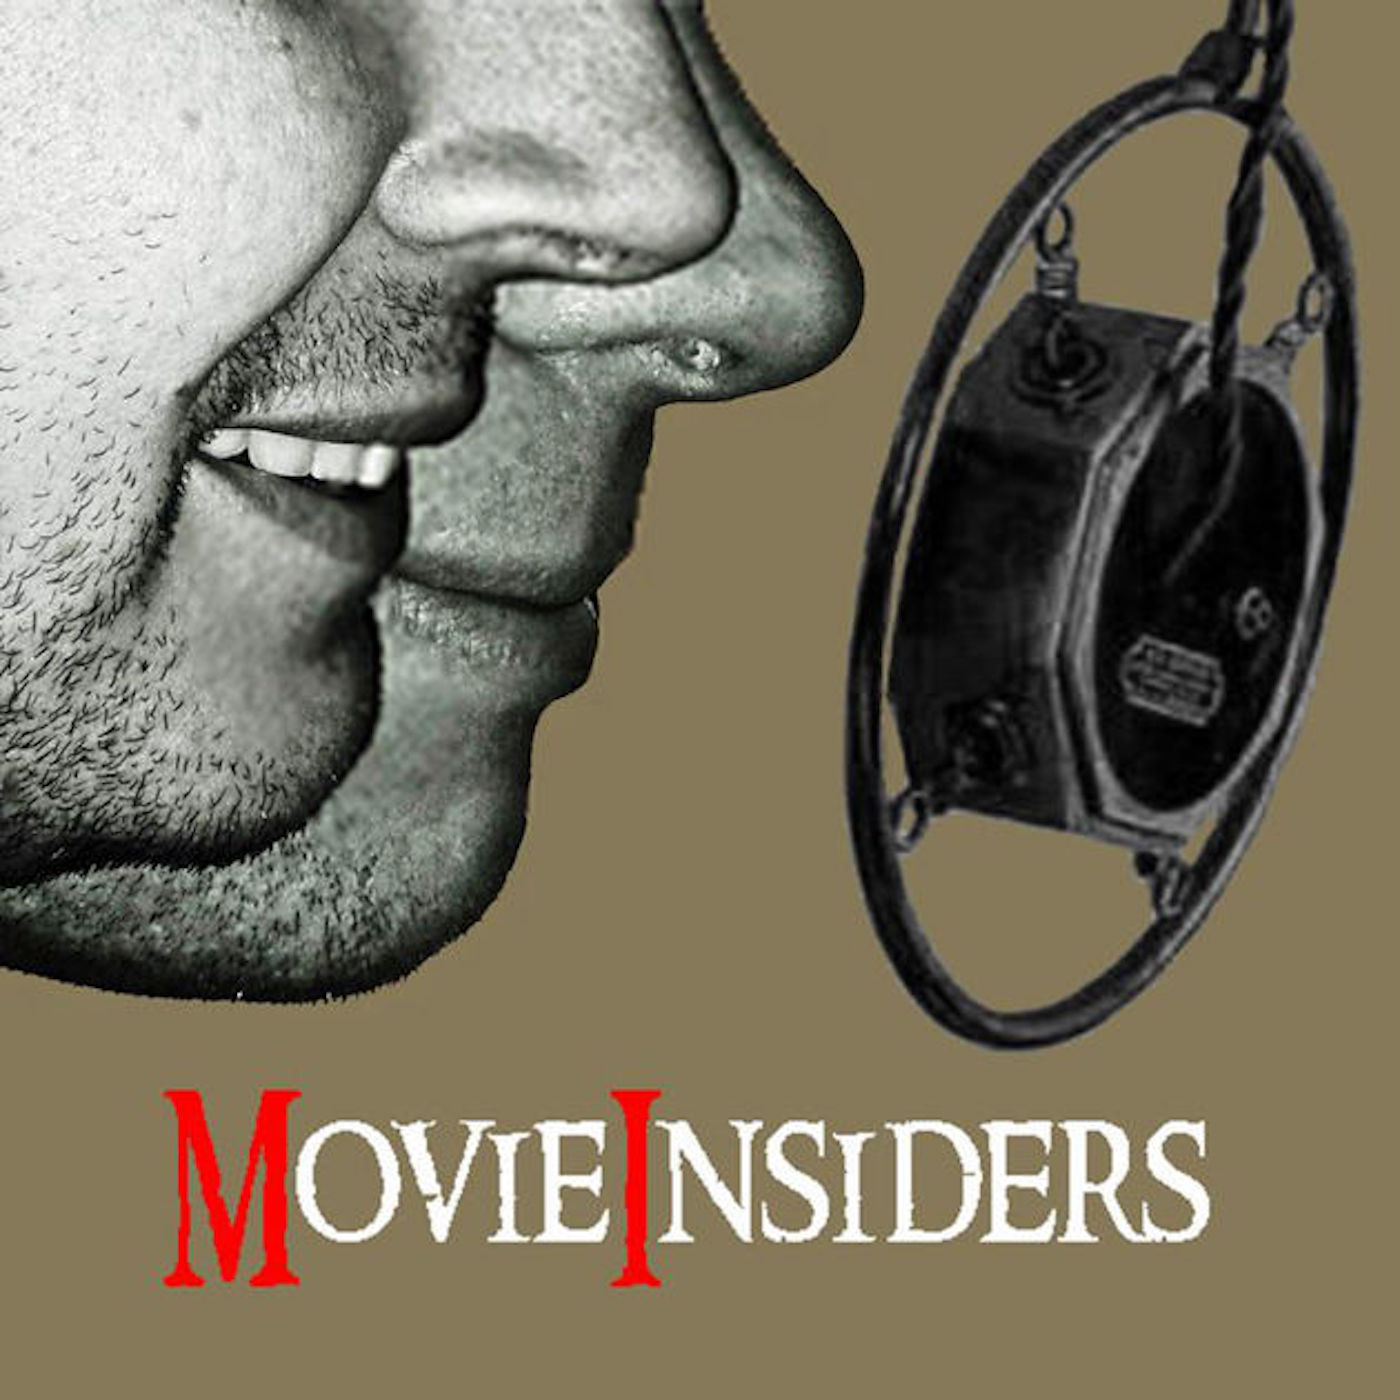 MovieInsiders:MovieInsiders